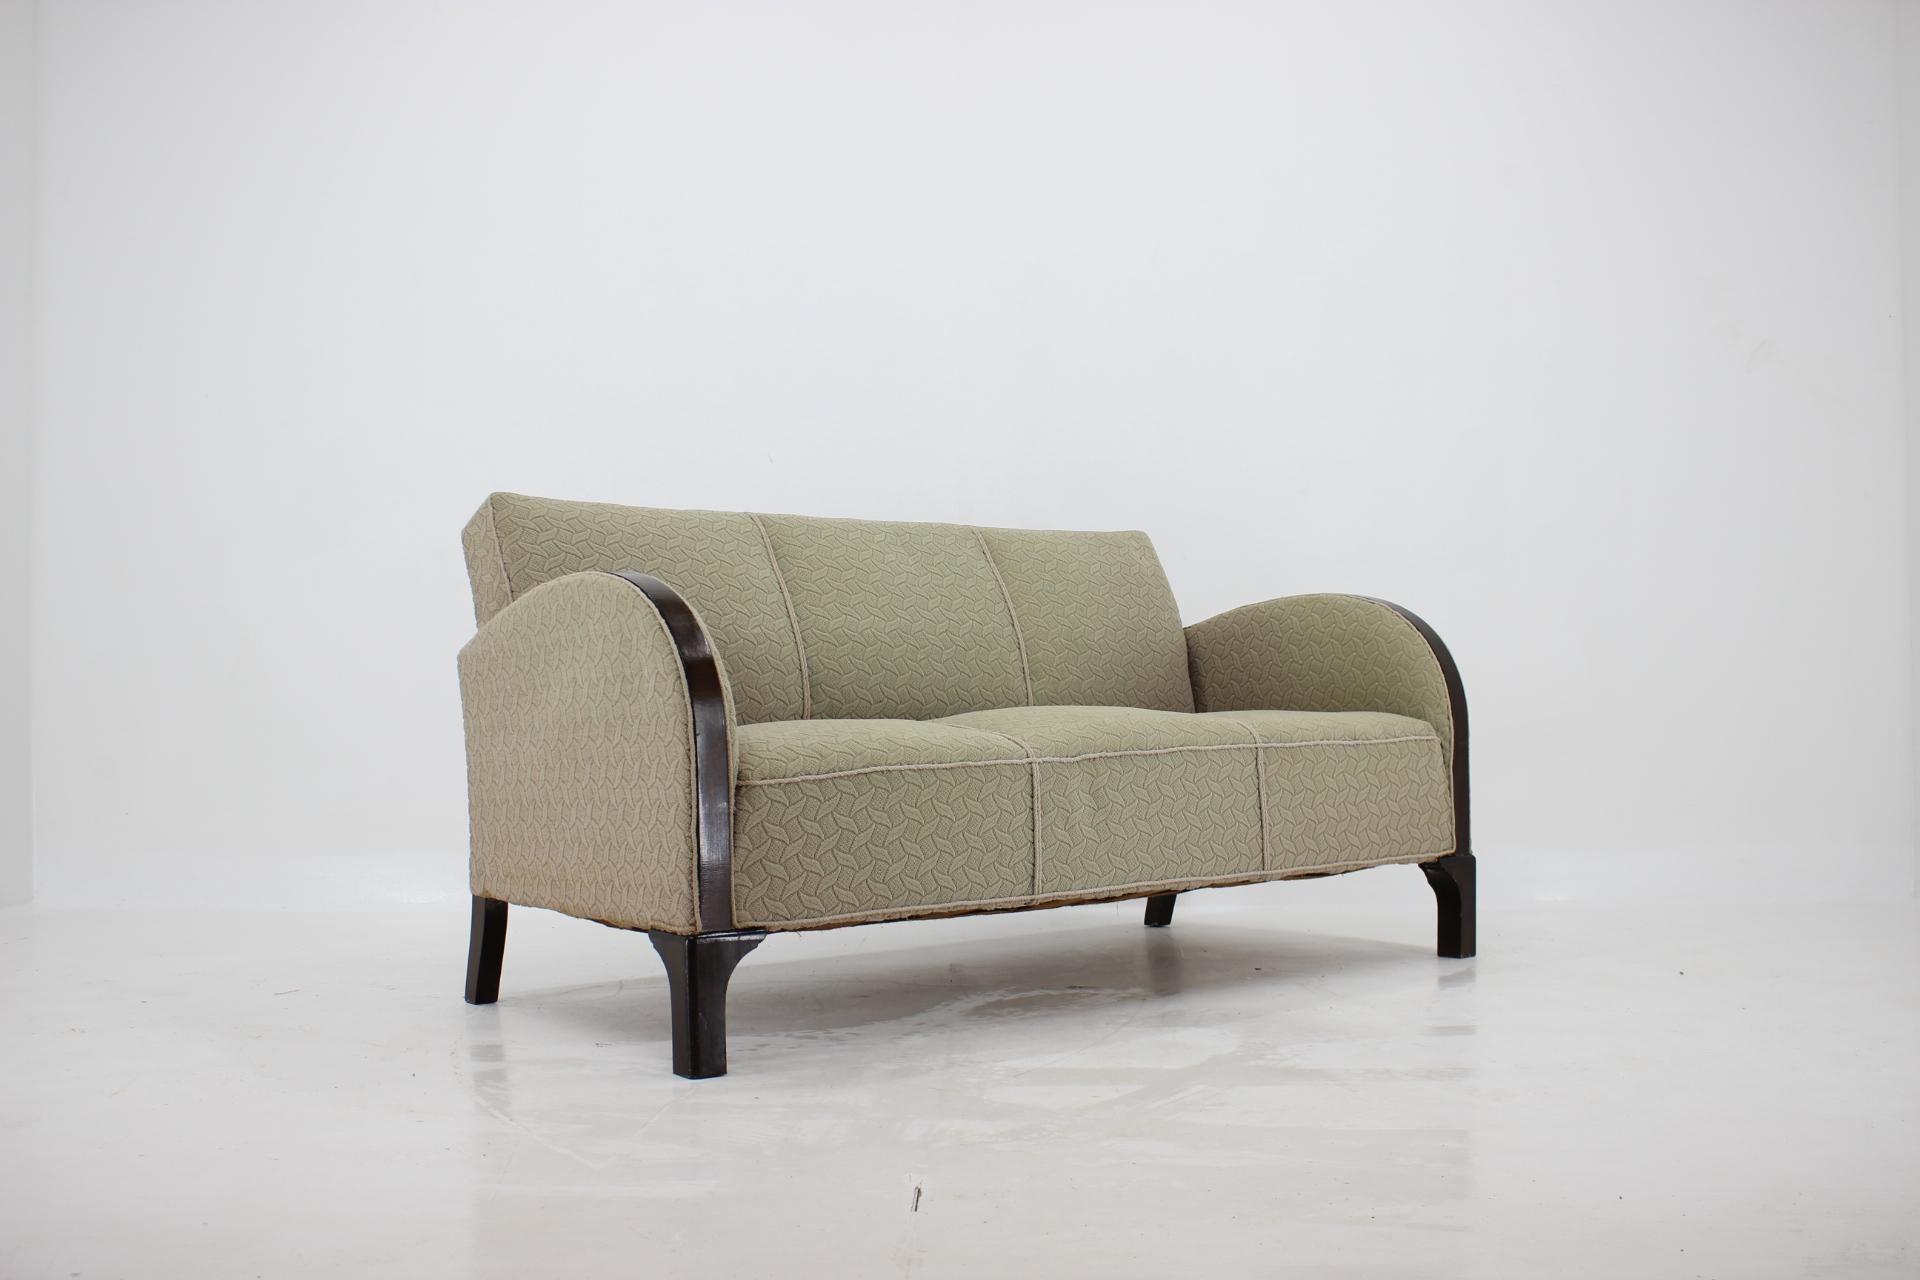 Fabric 1930s Art Deco Sofa and Armchair, Denmark